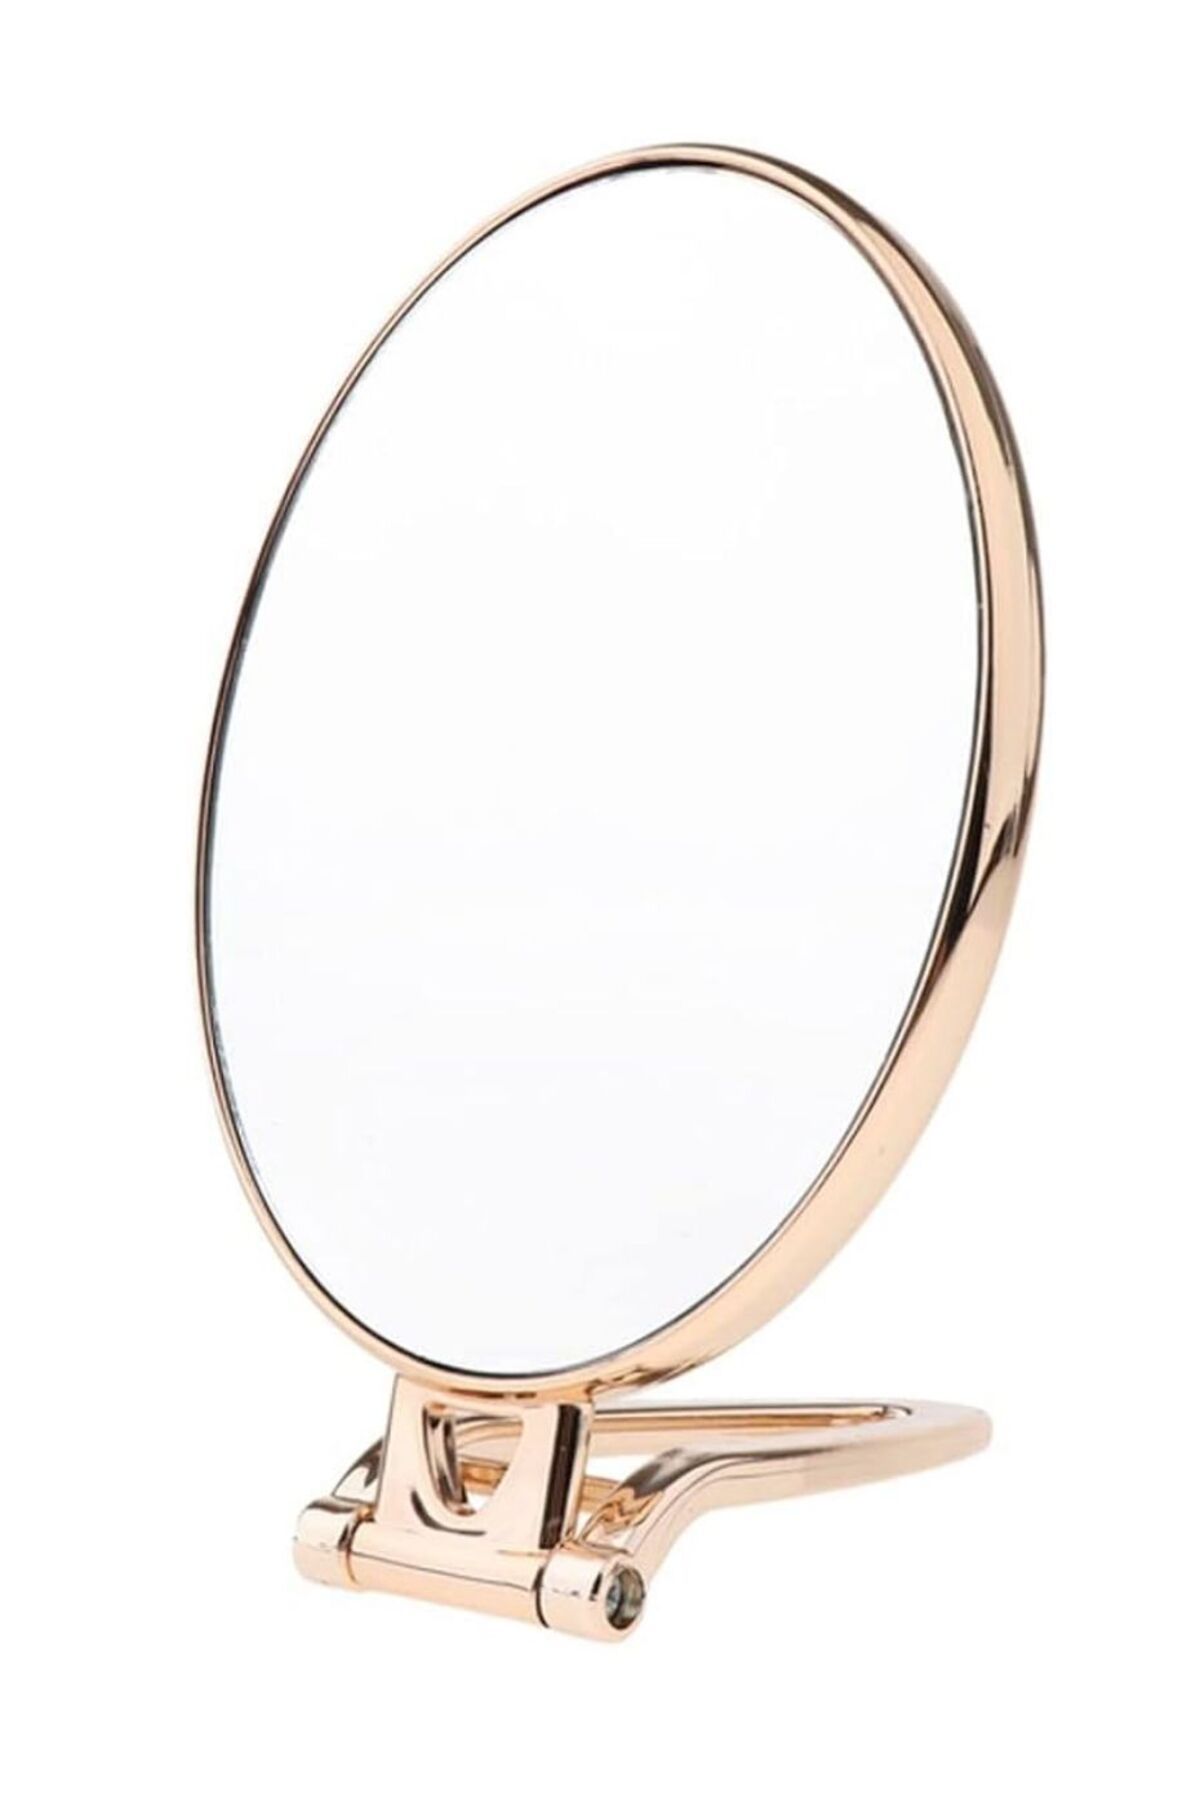 YDGR Oval Çift Taraflı Büyüteçli Makyaj Aynası Masa Üstü Aynası Katlanabilir Rose Gold Metalik 16x13cm